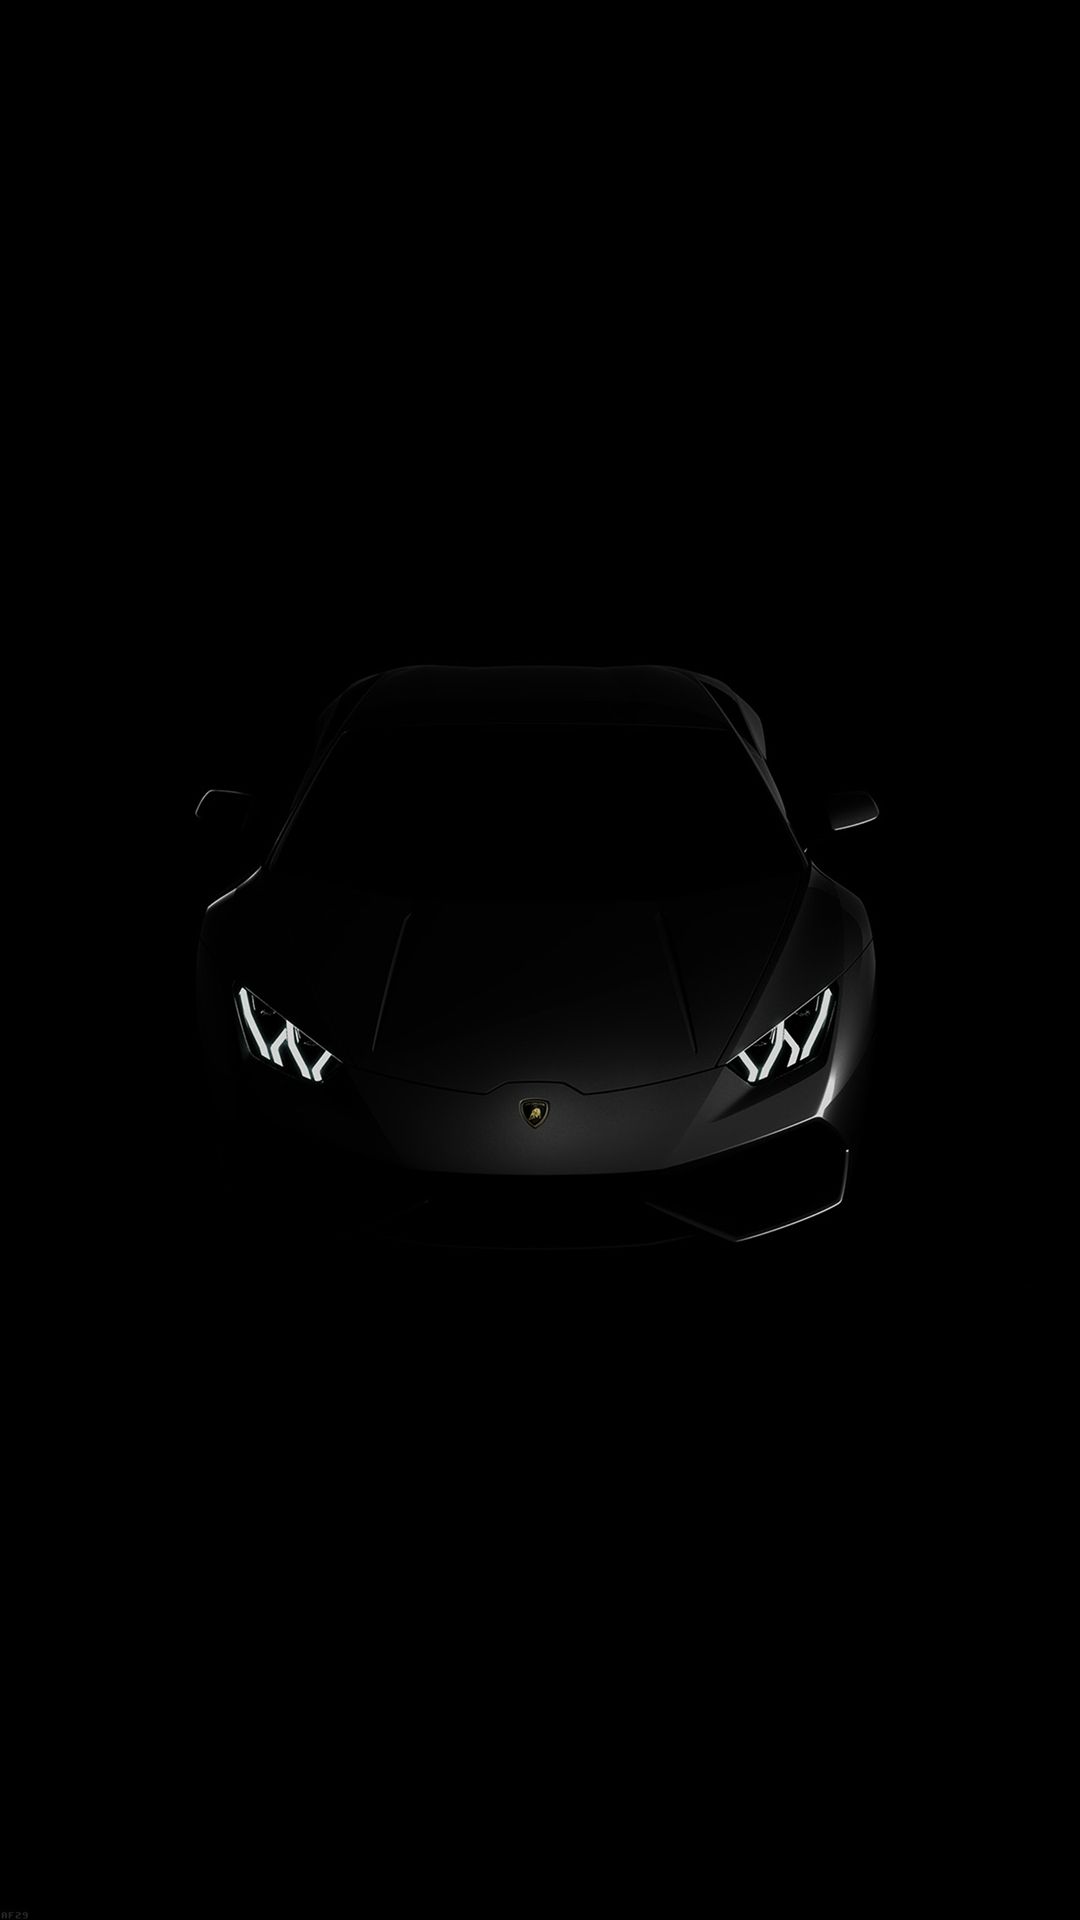 Lamborghini huracan lp black dark iphone wallpaper download iphone wallpapers ipadâ lamborghini aventador wallpaper lamborghini huracan black car wallpaper